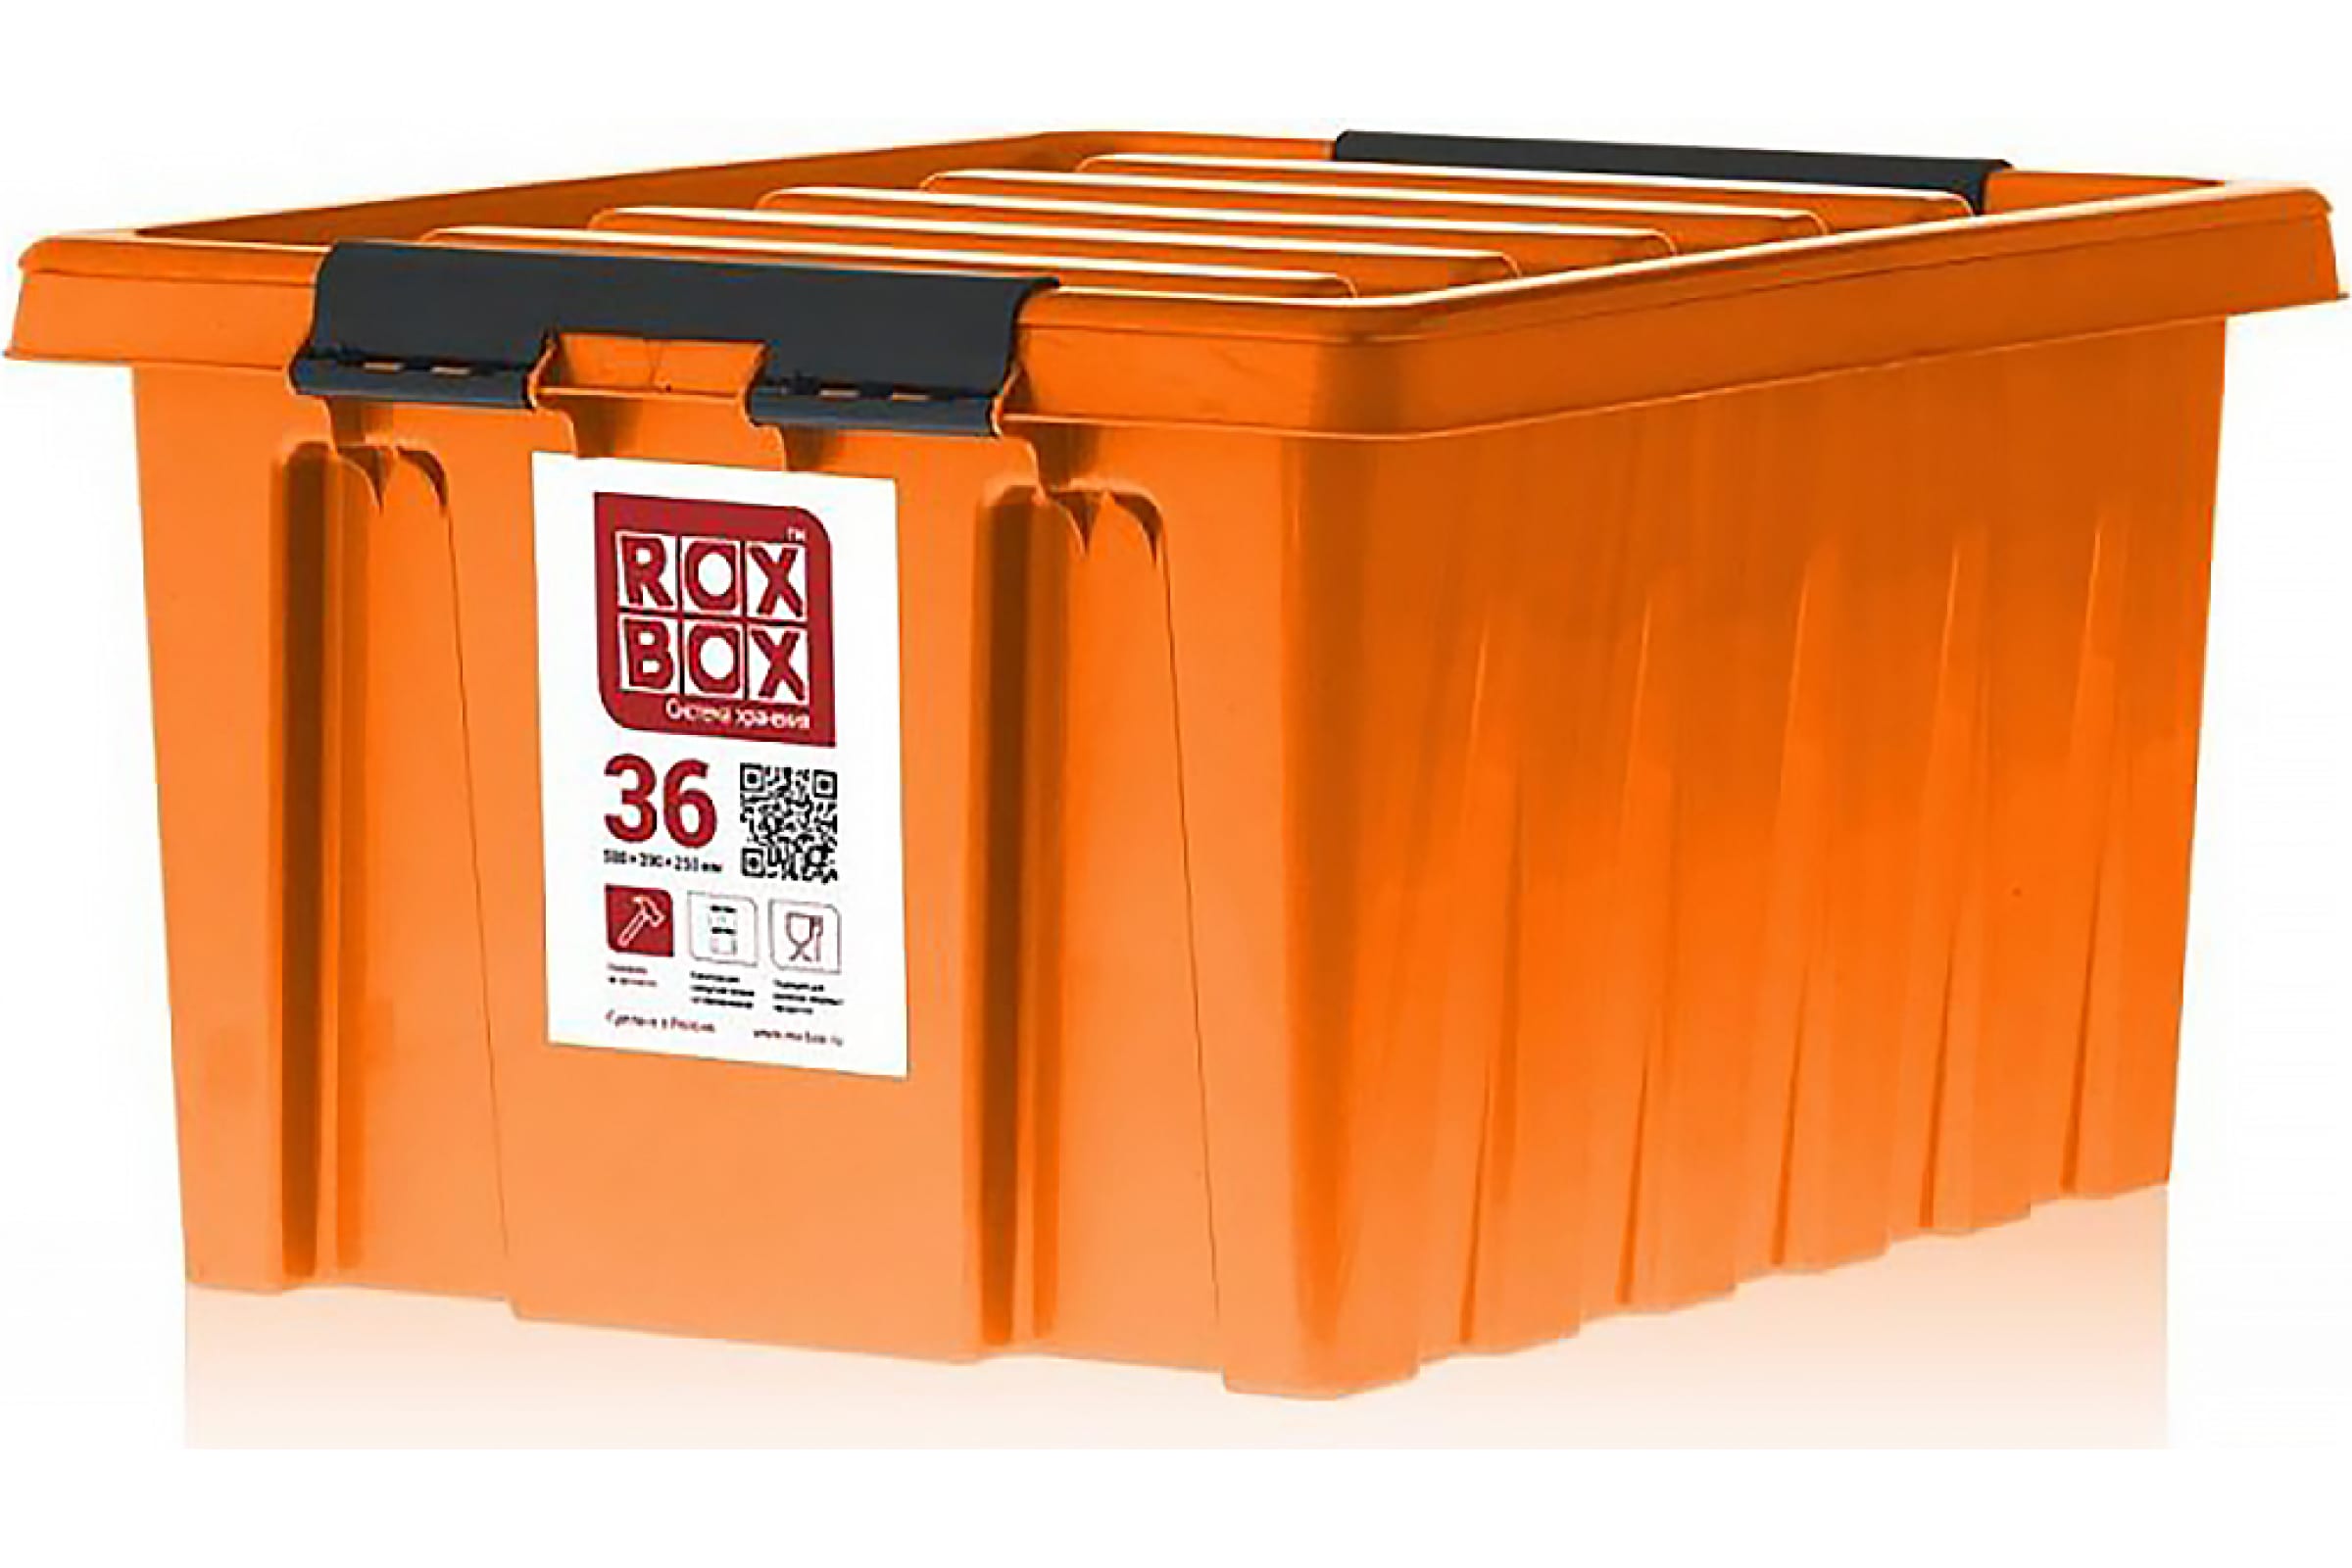 Rox Box Контейнер с крышкой, 36 л, оранжевый 036-00.12 контейнер для хранения с крышкой и вкладышем 6 5 л оранжевый